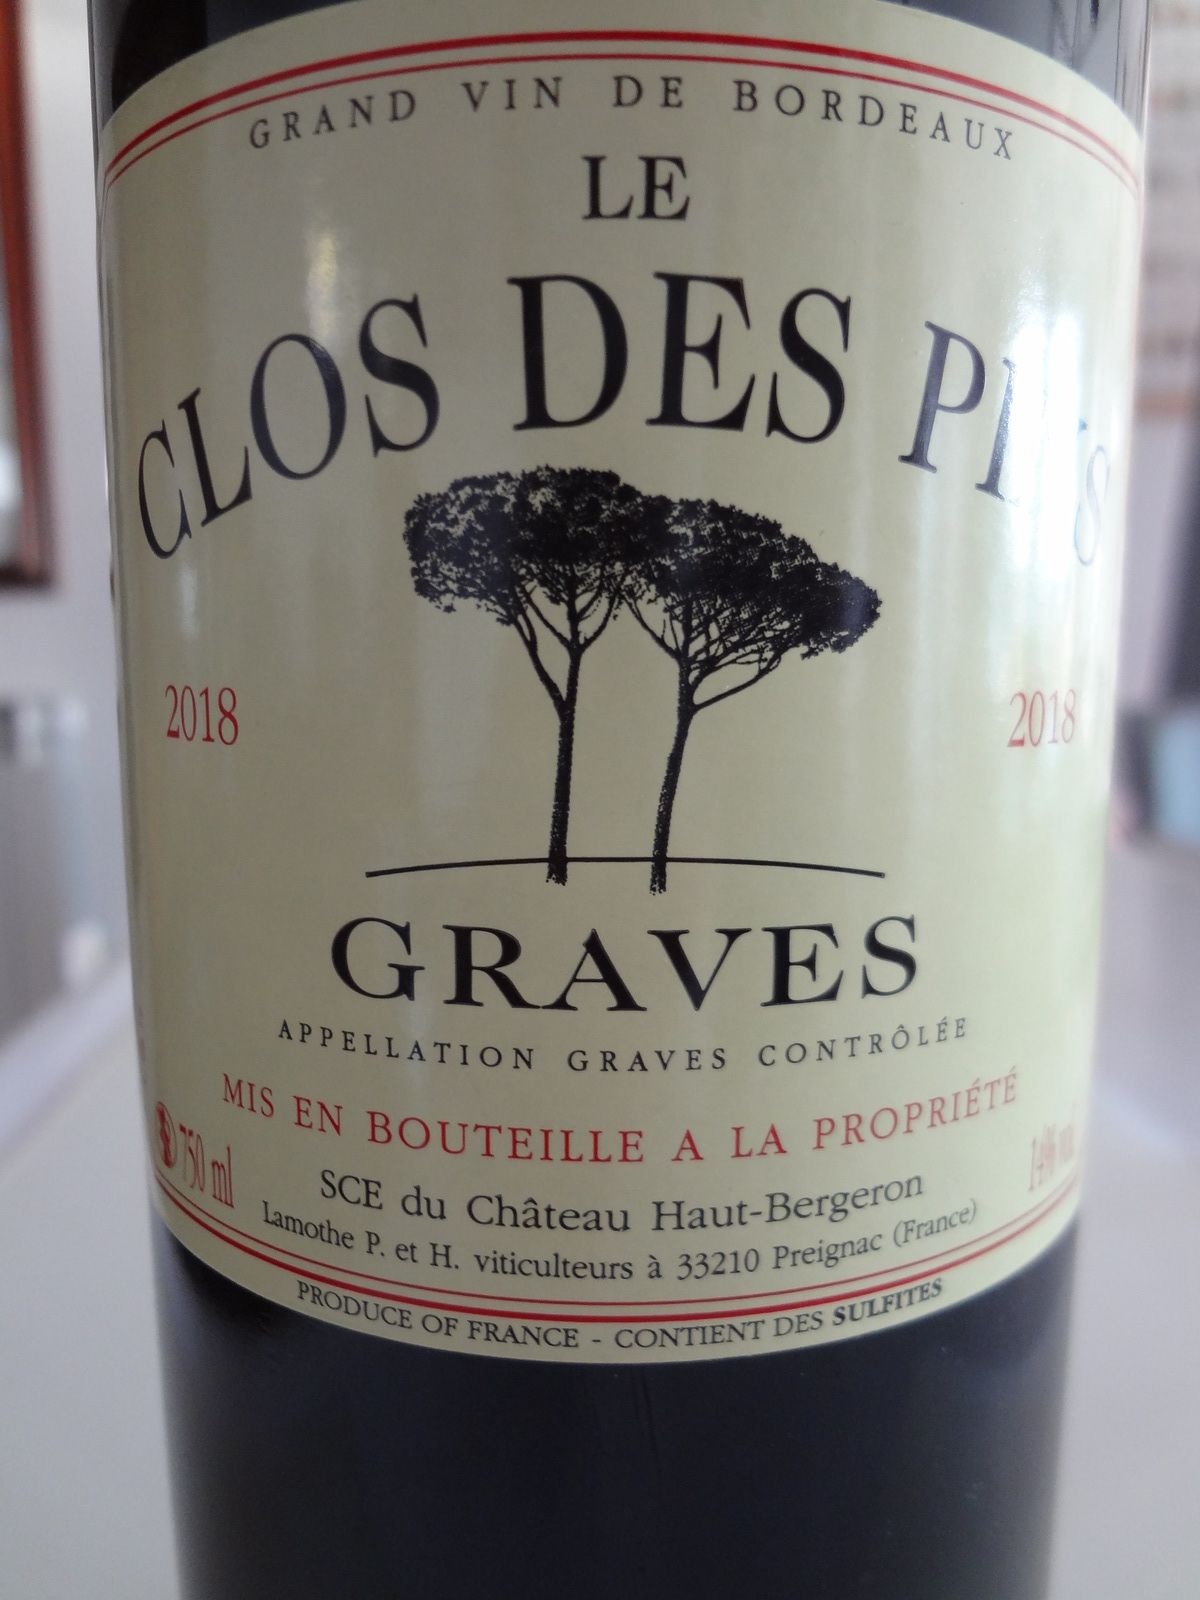 Bordeaux - AOC Graves - Le Clos des Pins 2018.